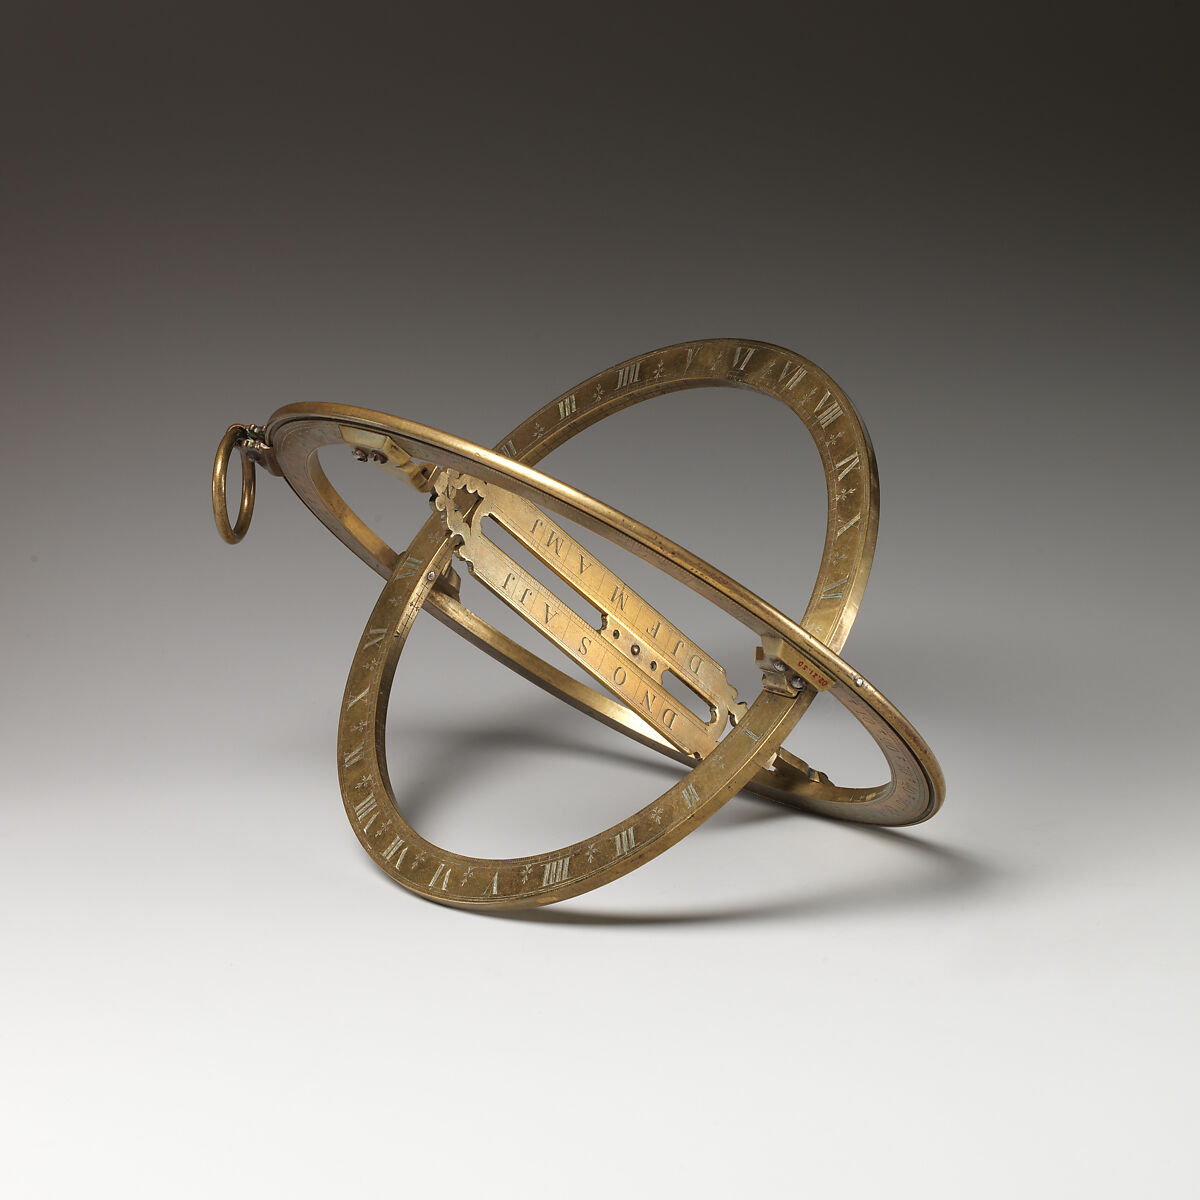 Universal ring sundial, William Collier  British, Brass, British, London